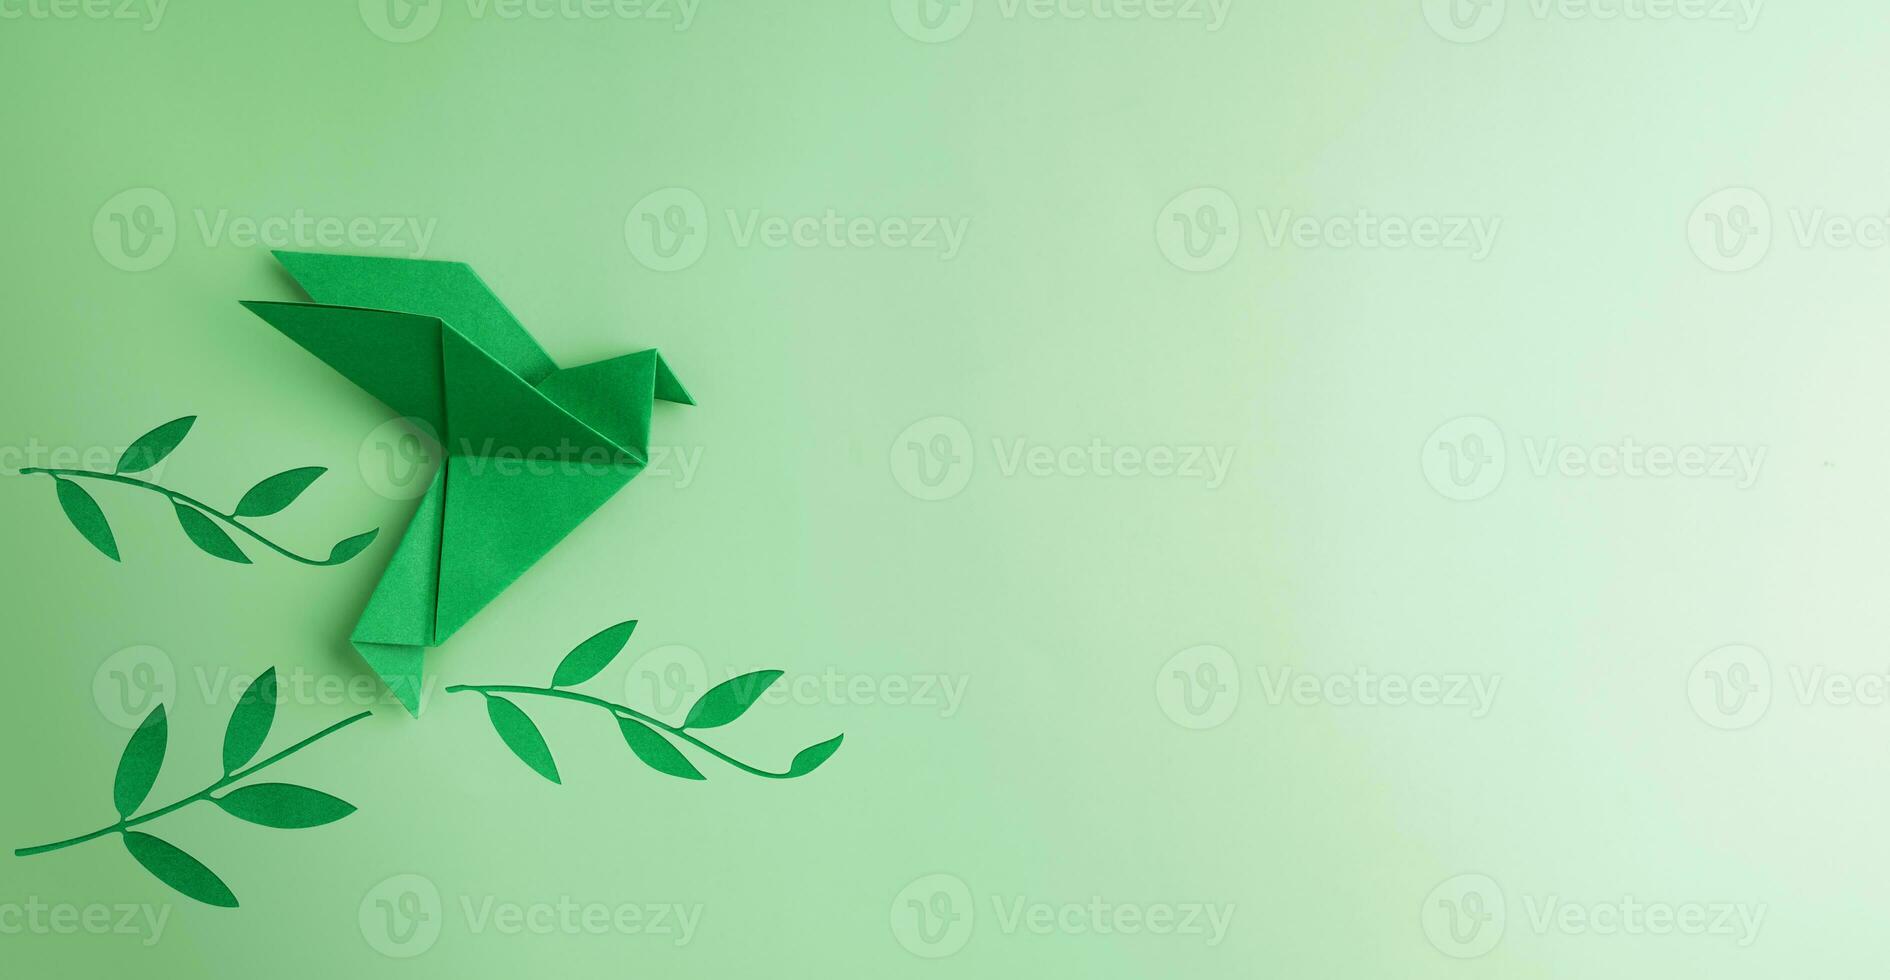 fred och ny början av hoppas. en grön duva flygande över grön oliv gren. värld internationell fred dag. de begrepp av en fladdrande fågel den där ger fredlig till de värld foto